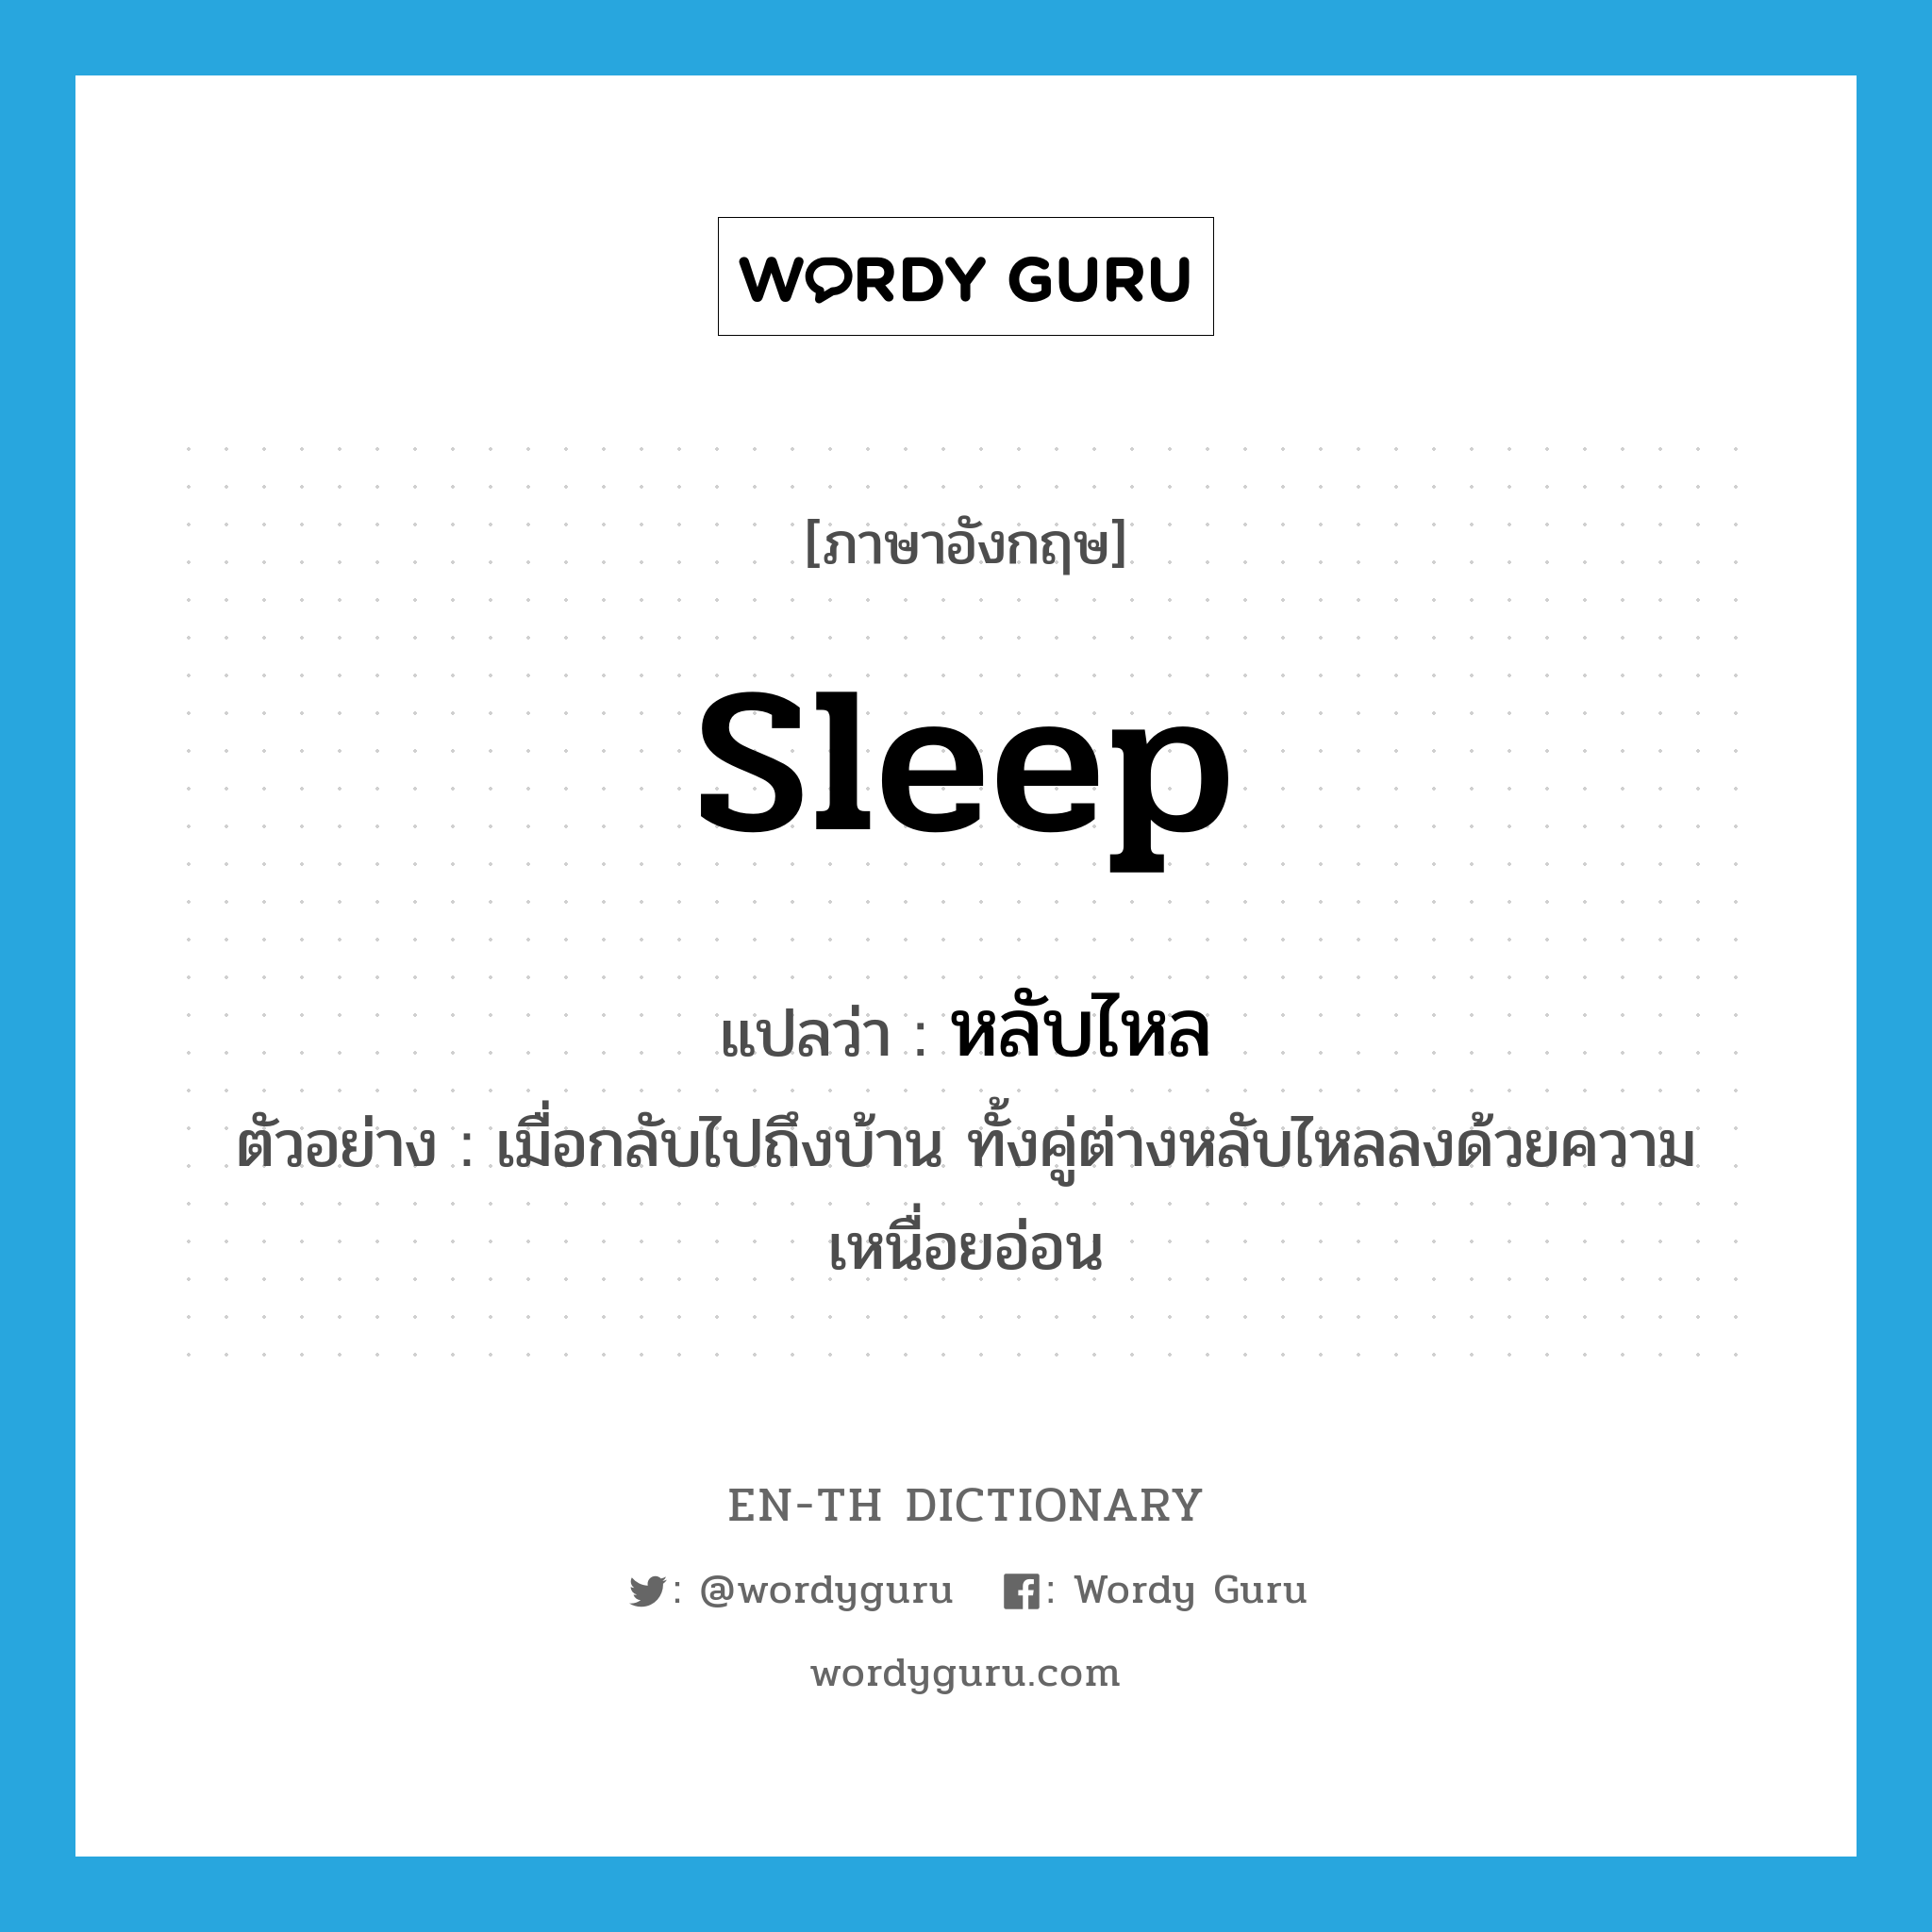 sleep แปลว่า?, คำศัพท์ภาษาอังกฤษ sleep แปลว่า หลับไหล ประเภท V ตัวอย่าง เมื่อกลับไปถึงบ้าน ทั้งคู่ต่างหลับไหลลงด้วยความเหนื่อยอ่อน หมวด V